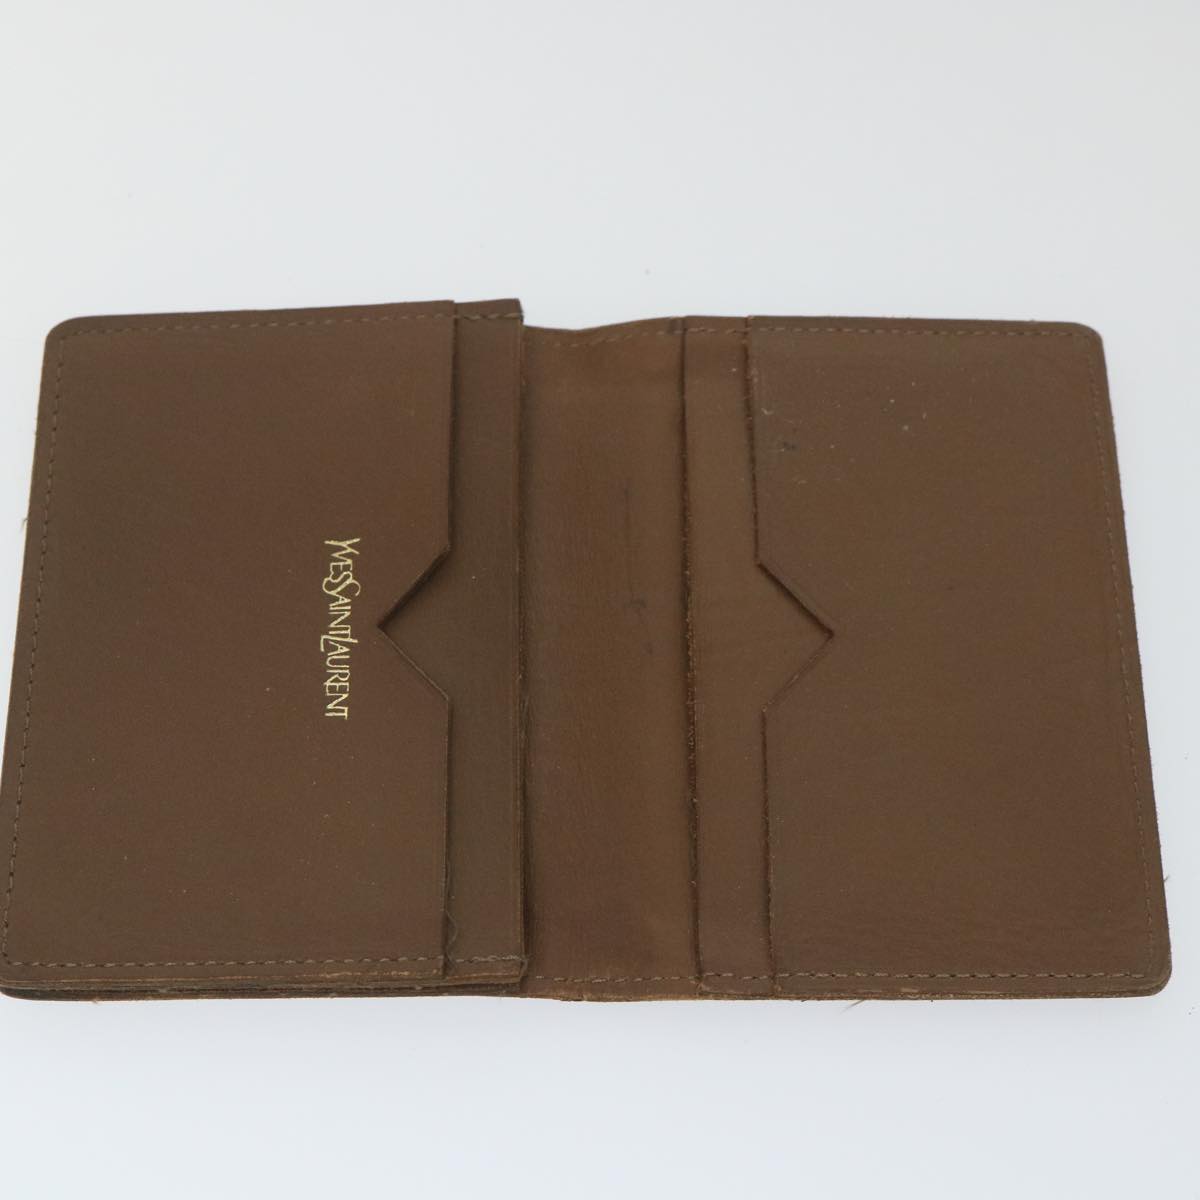 SAINT LAURENT Card Case Leather 4Set Black Brown Auth bs9888